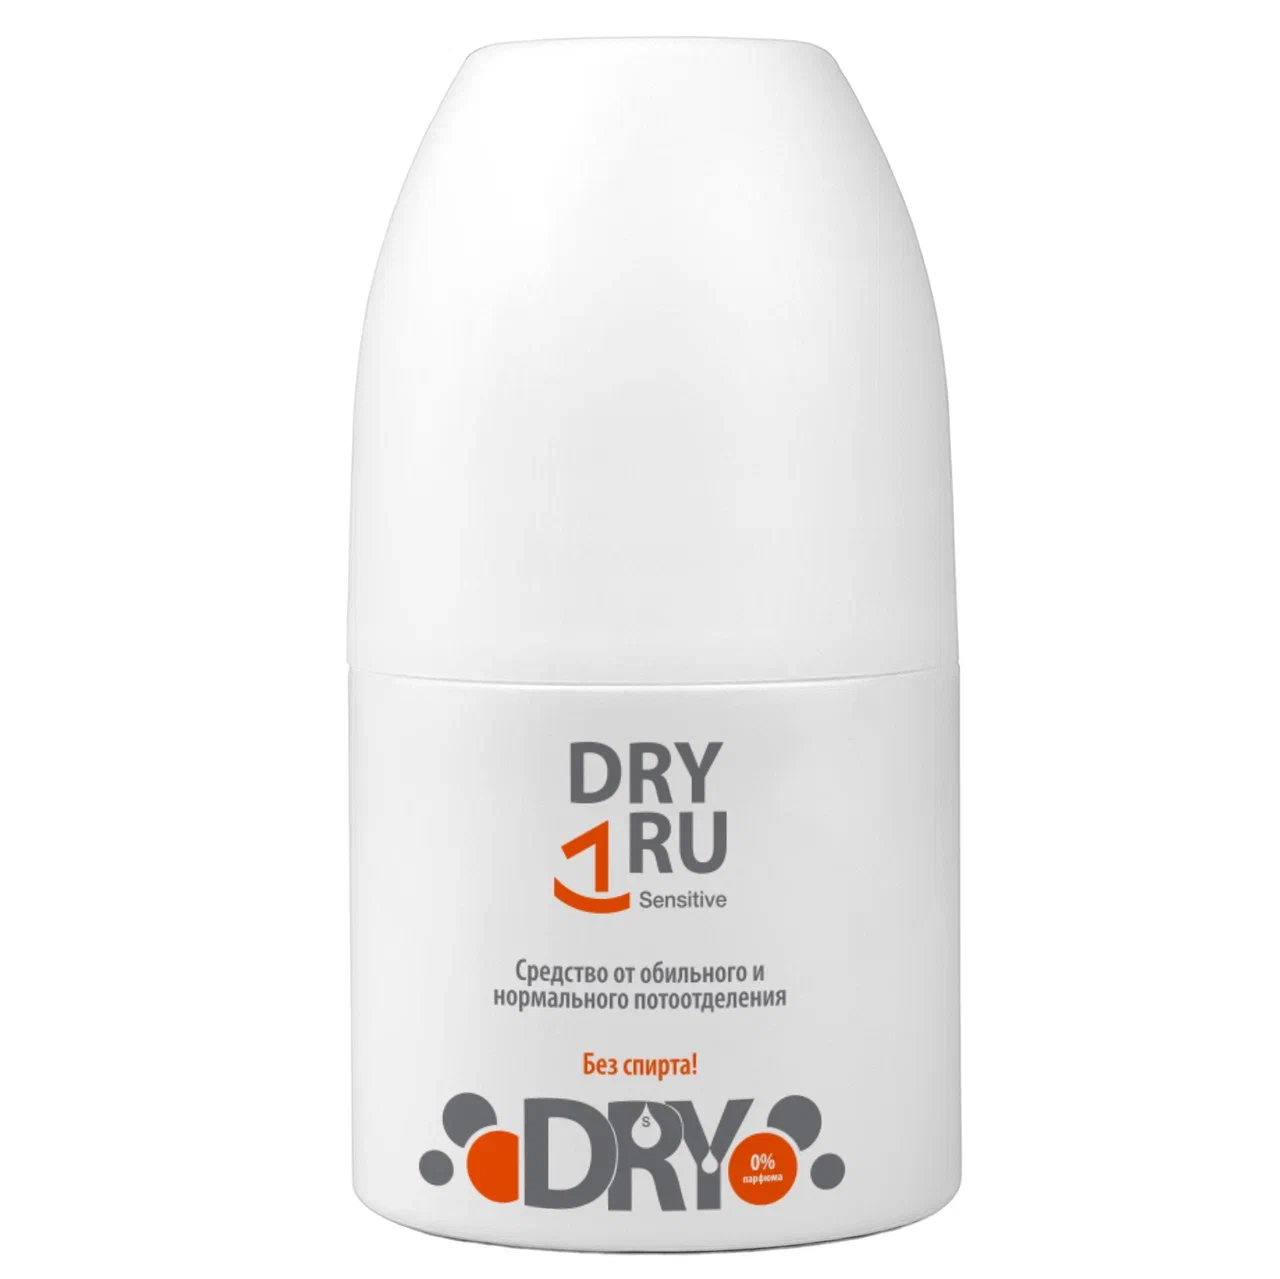 Дезодорант-антиперспирант DRY RU Sensitive шариковый, от пота и запаха 50 мл средство от пота и запаха ног 5 дней 1 5 г пакетики 10 шт